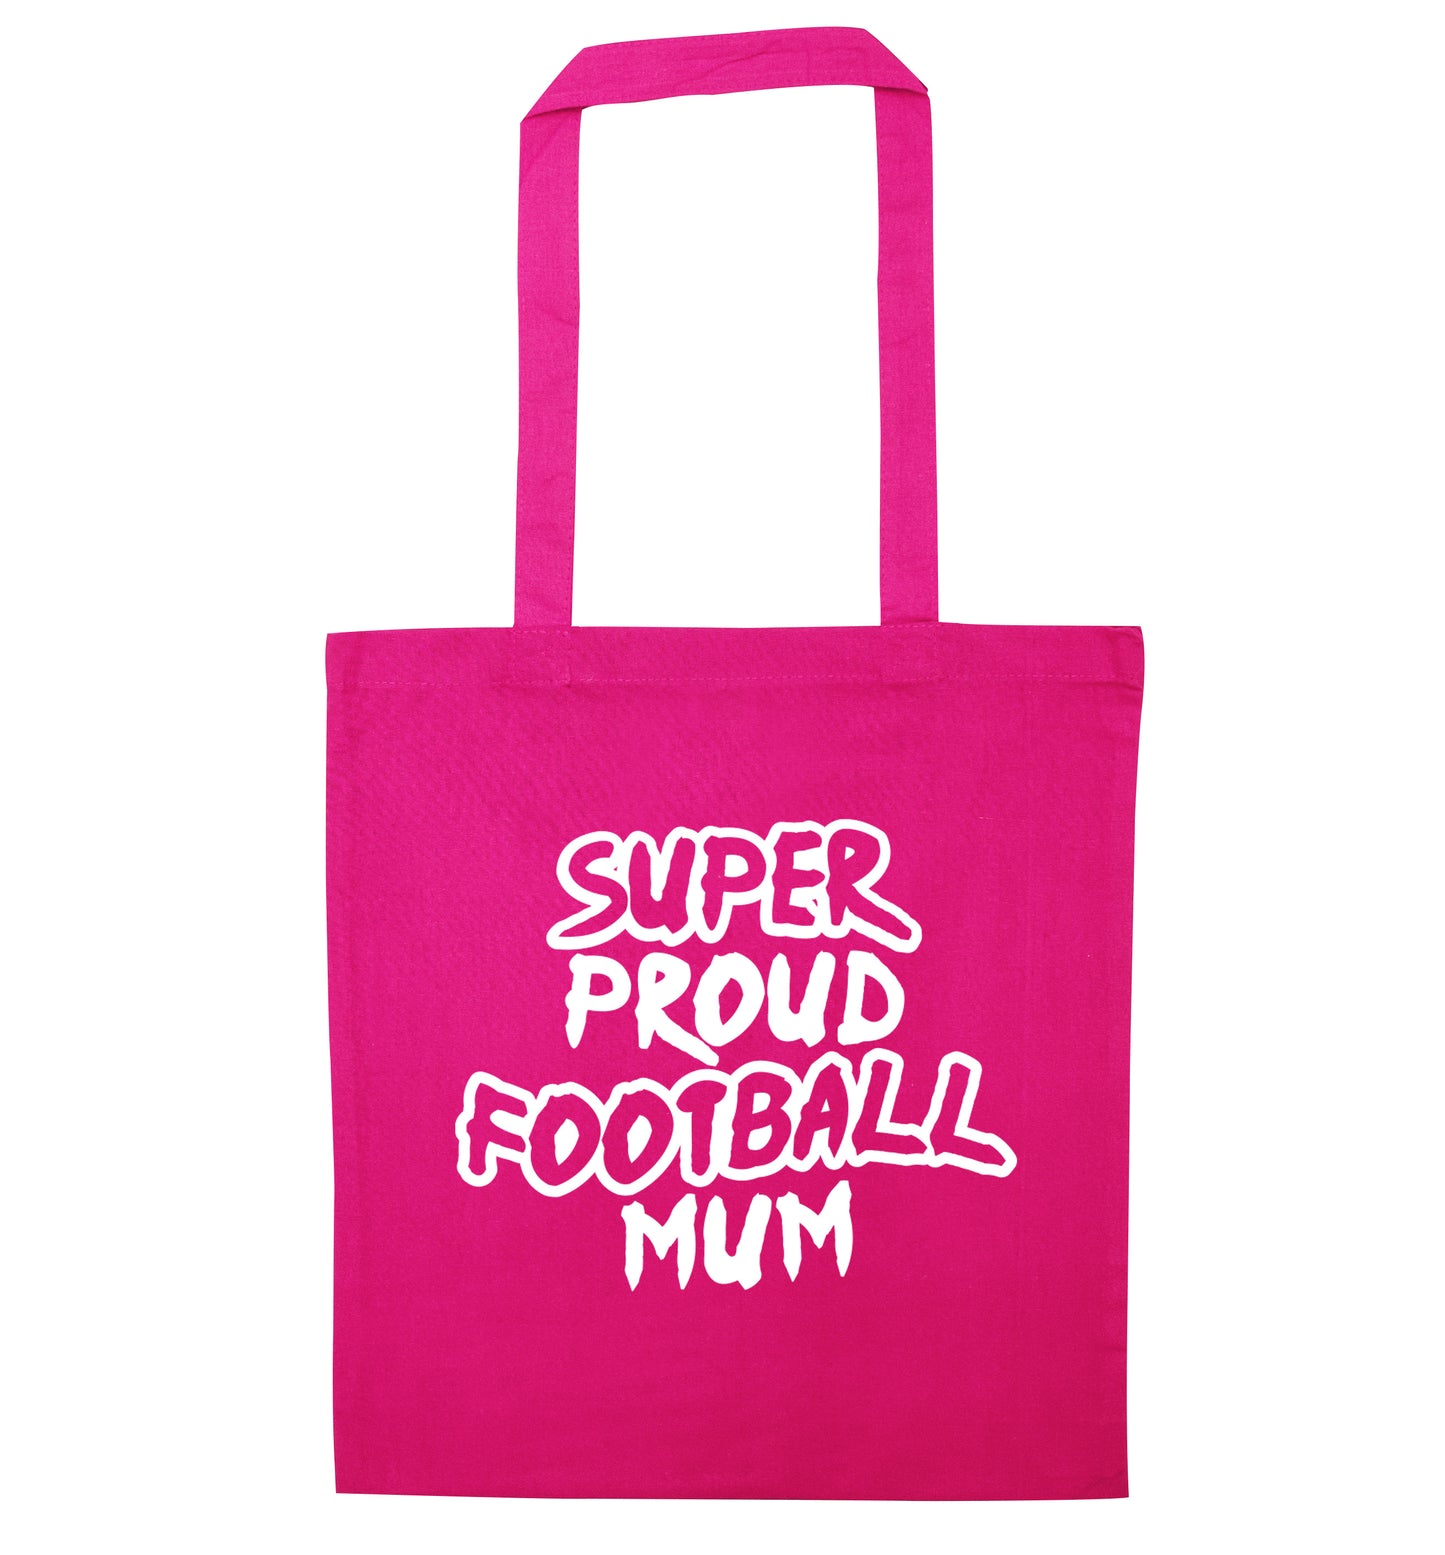 Super proud football mum pink tote bag